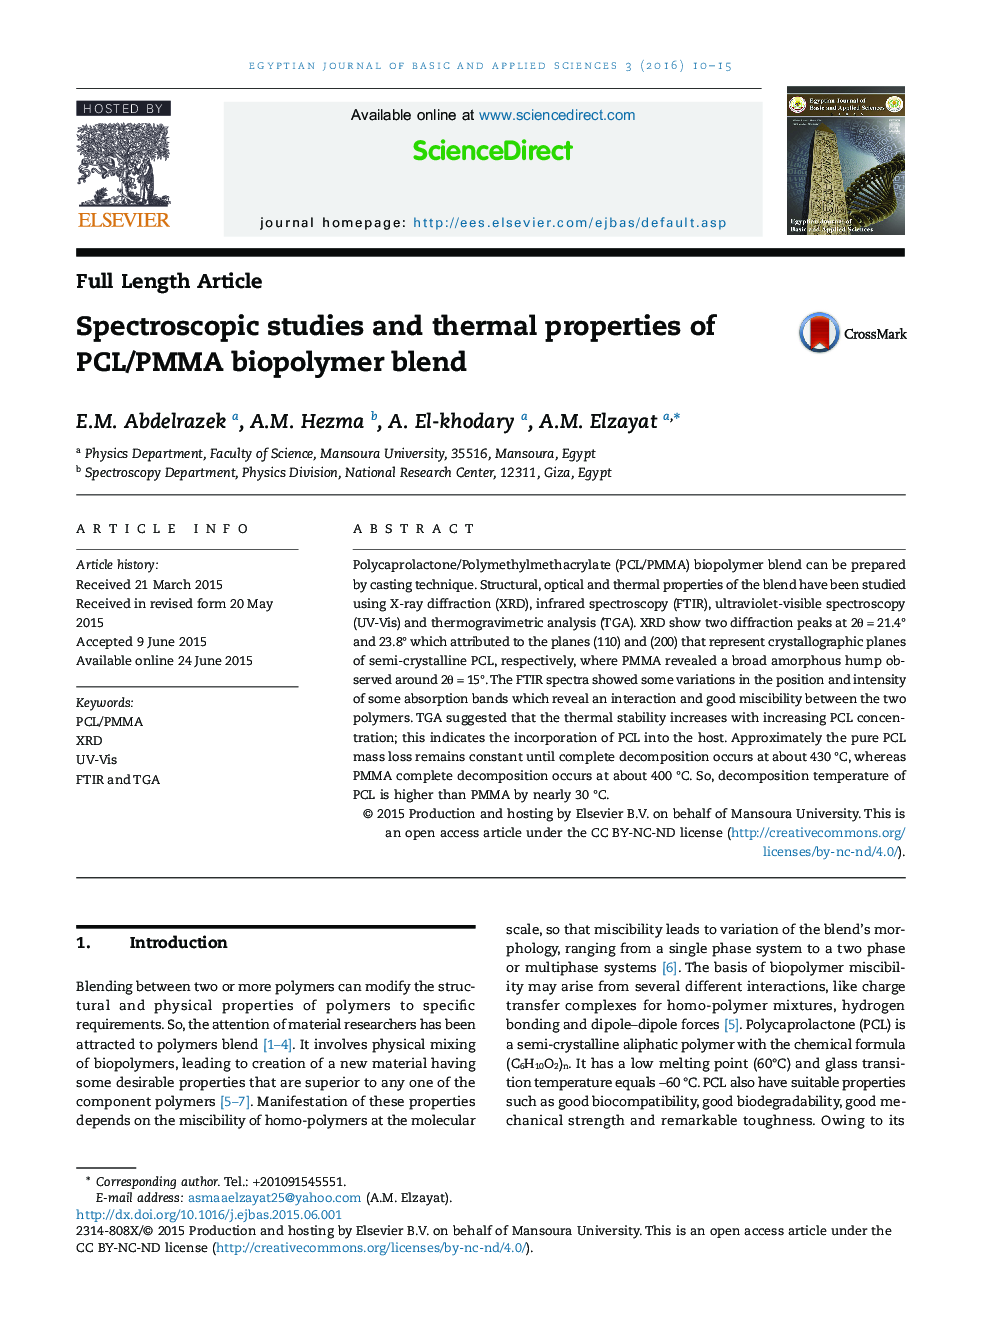 مطالعات اسپکتروسکوپی و خصوصیات حرارتی ترکیب پلیمرهای زیستی PCL / PMMA